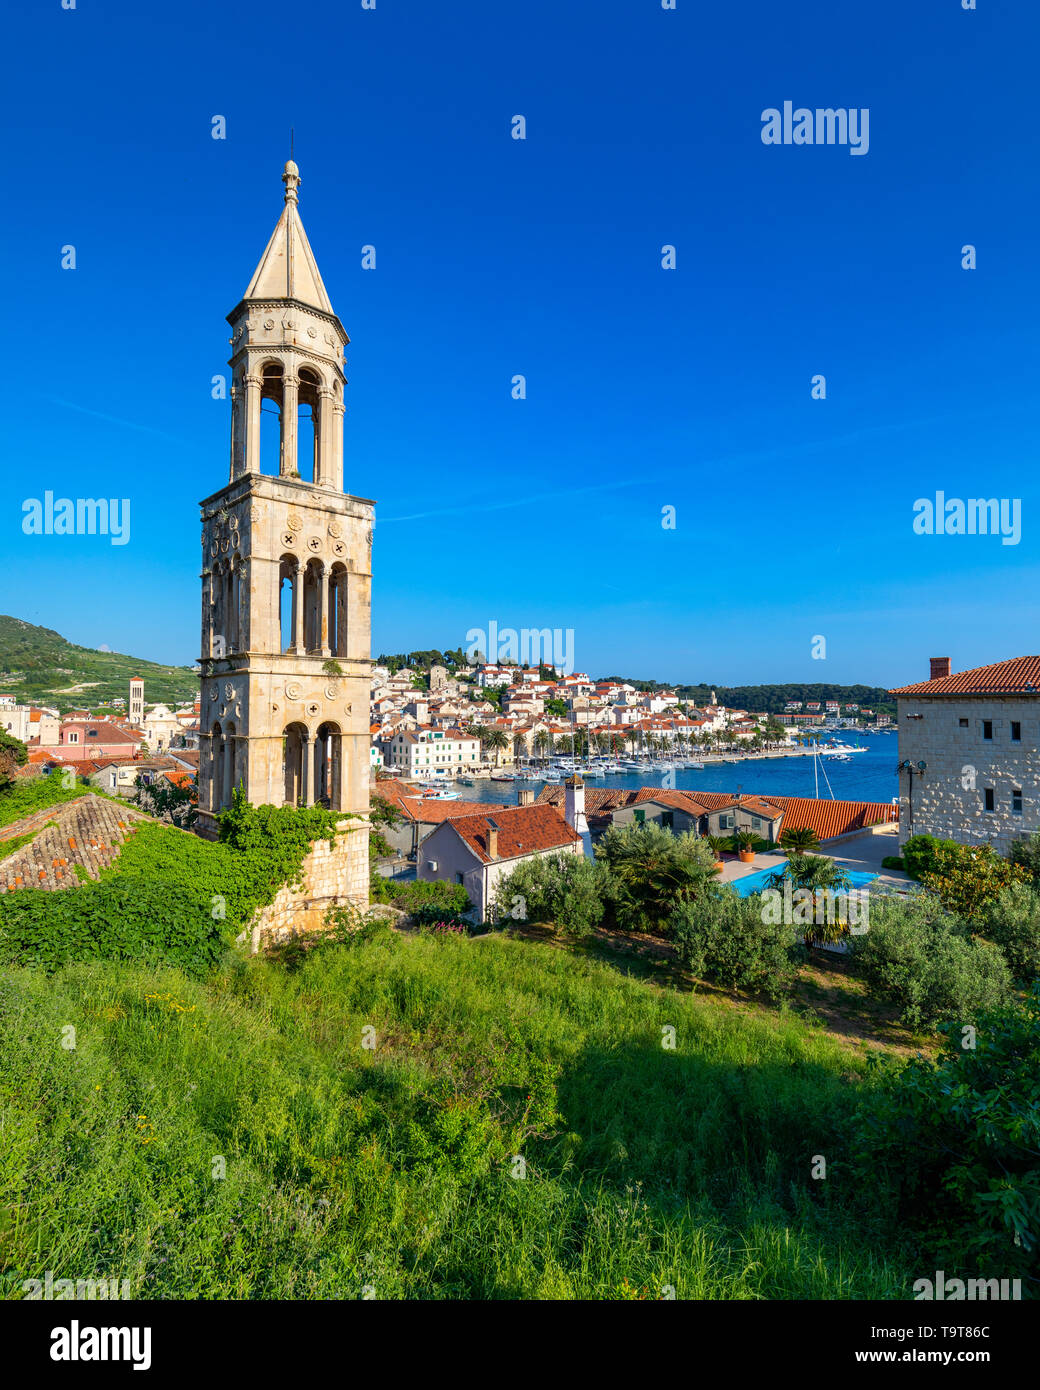 Bunte Landschaft in der Stadt Hvar, berühmten Reisen auf Adria, Kroatien. Erstaunliche Stadt Hvar auf der Insel Hvar, Kroatien. Blick auf die Insel Hvar Stockfoto